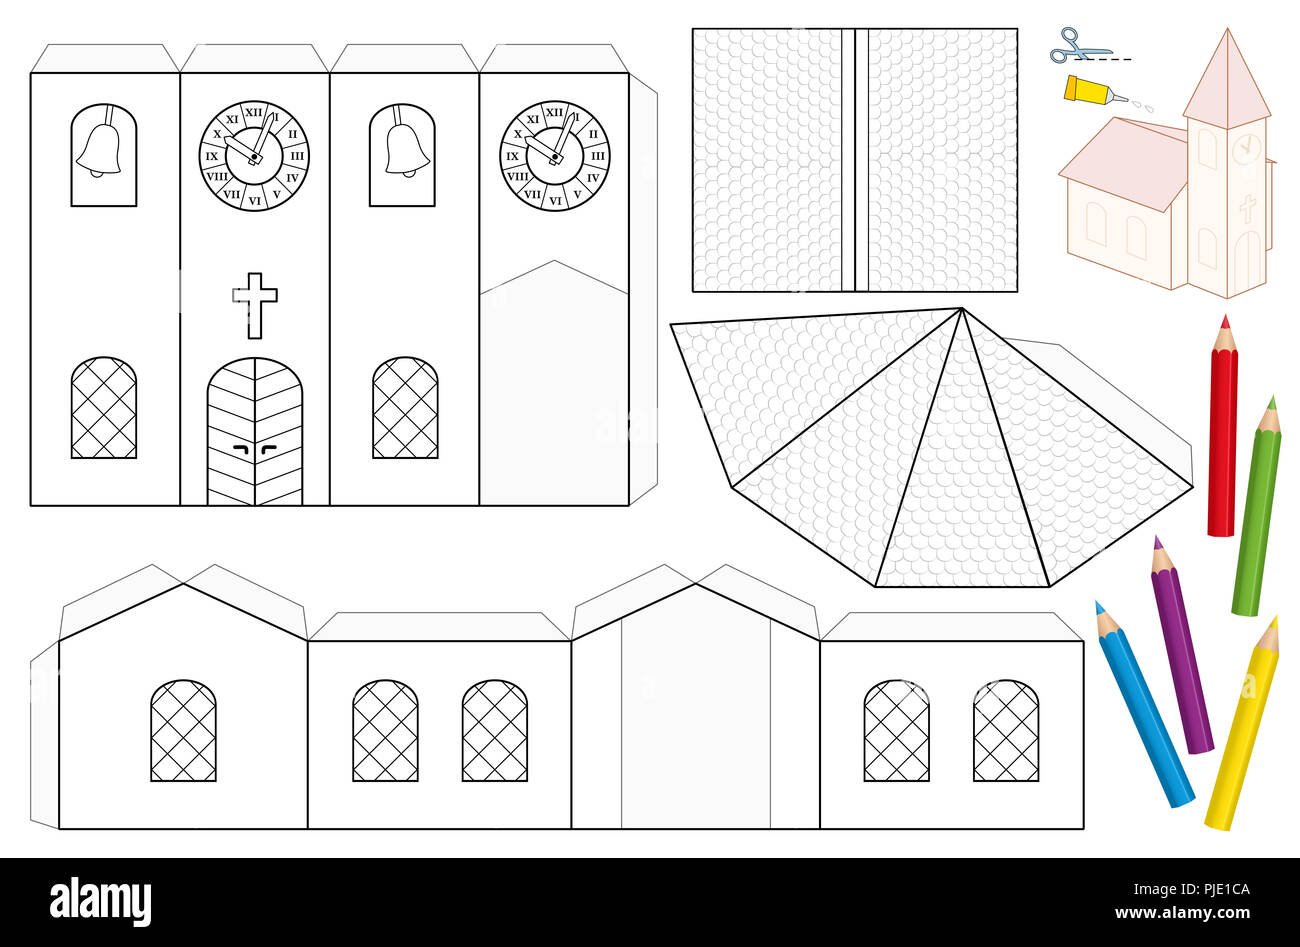 Kirche Handwerk Blatt Papier. Unbemalt Bohrschablone für Kinder für Färbung und ein 3D-Modell Kirche mit Turm, Kirchenschiff, Dächer, Uhr. Stockfoto